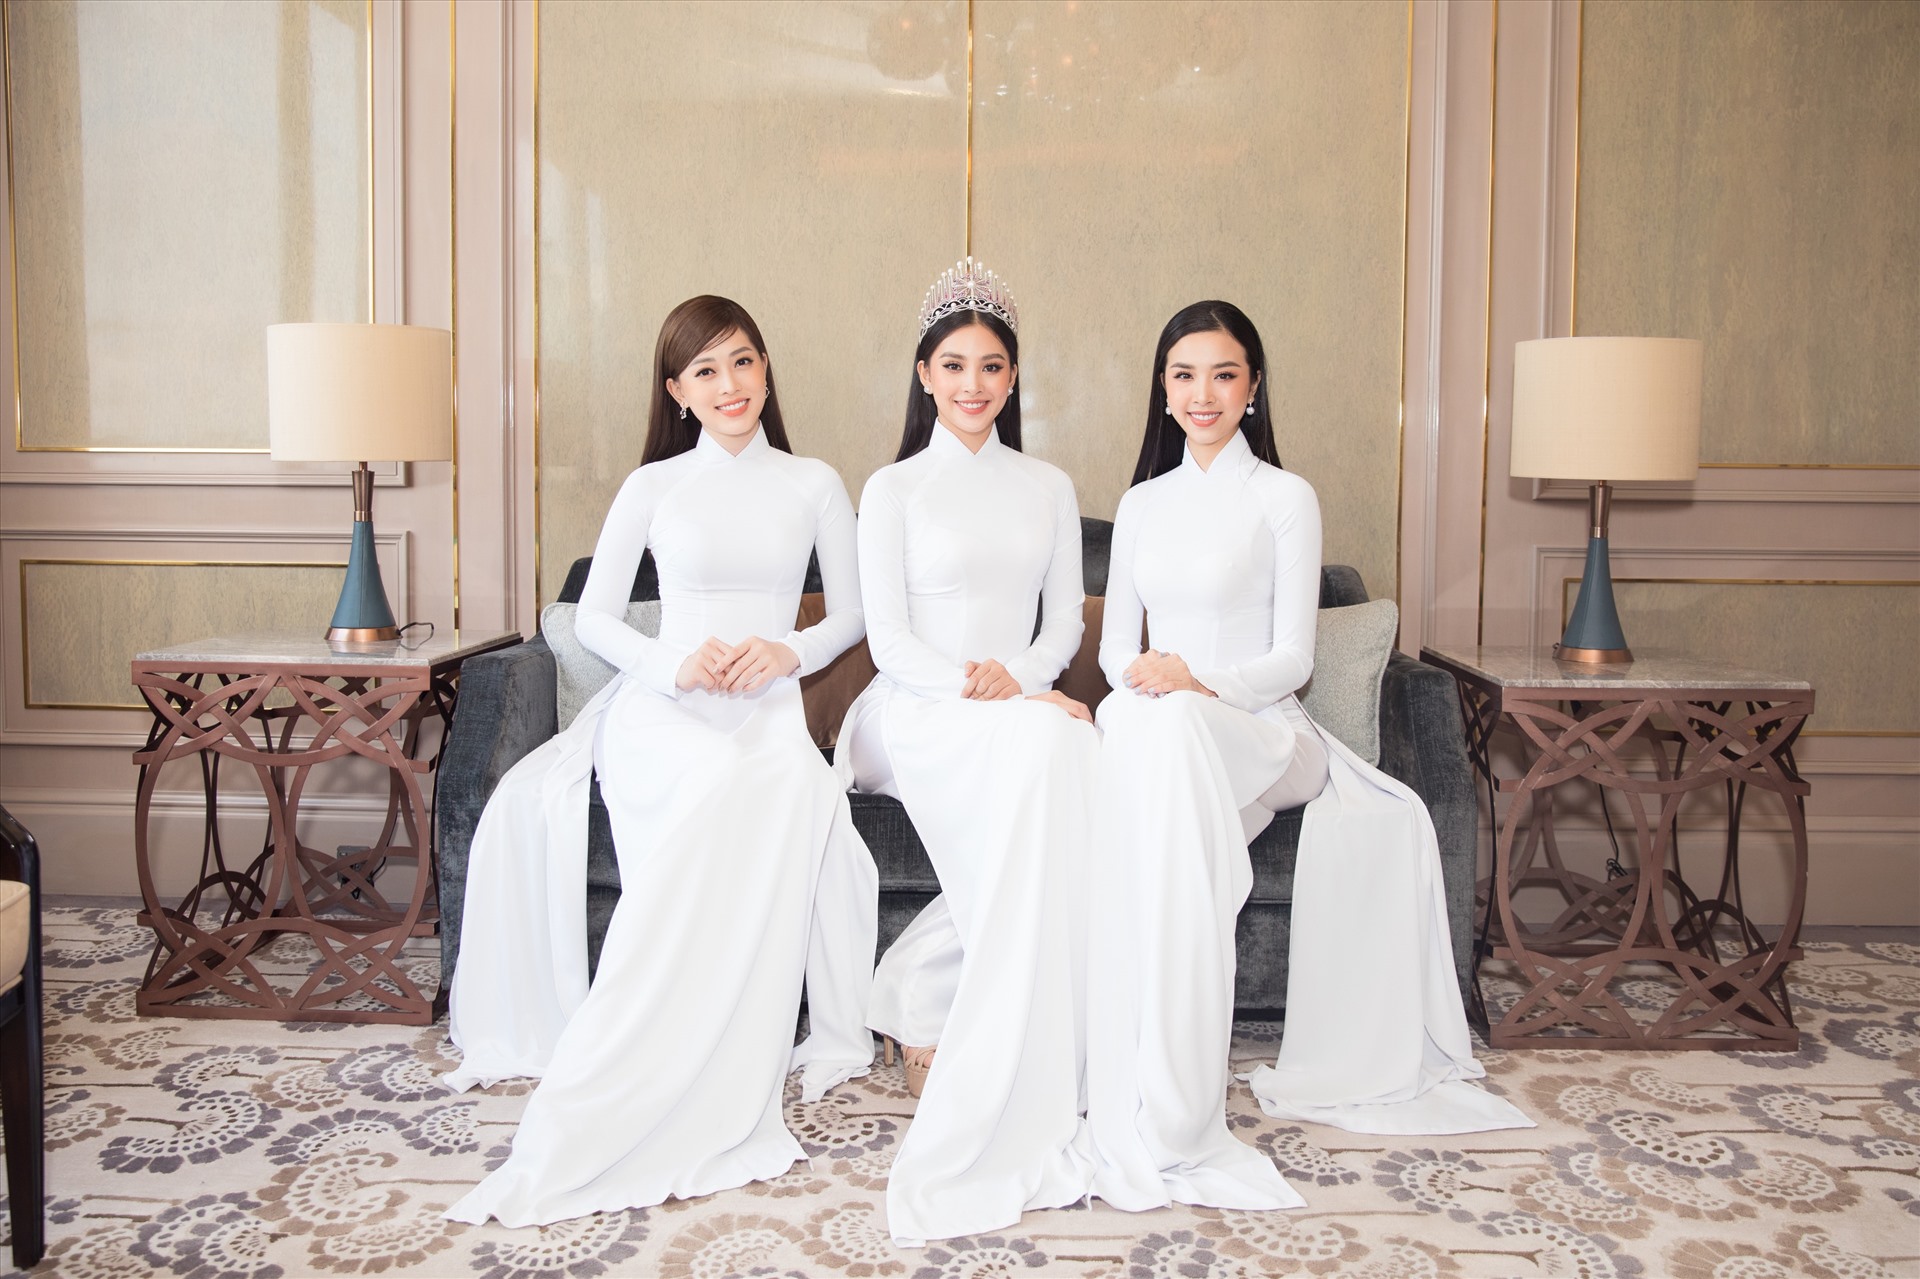 Top 3 Hoa hậu Việt Nam 2018 khoe sắc trong tà áo dài trắng đồng điệu nhưng mỗi người vẫn toát lên một nét đẹp riêng biệt. Trong suốt 2 năm đương nhiệm cả ba cô nàng luôn chiếm trọn tình cảm của khán giả với hình ảnh chỉn chu và đóng góp hết mình trong các hoạt động xã hội. Ảnh: Sen Vàng.